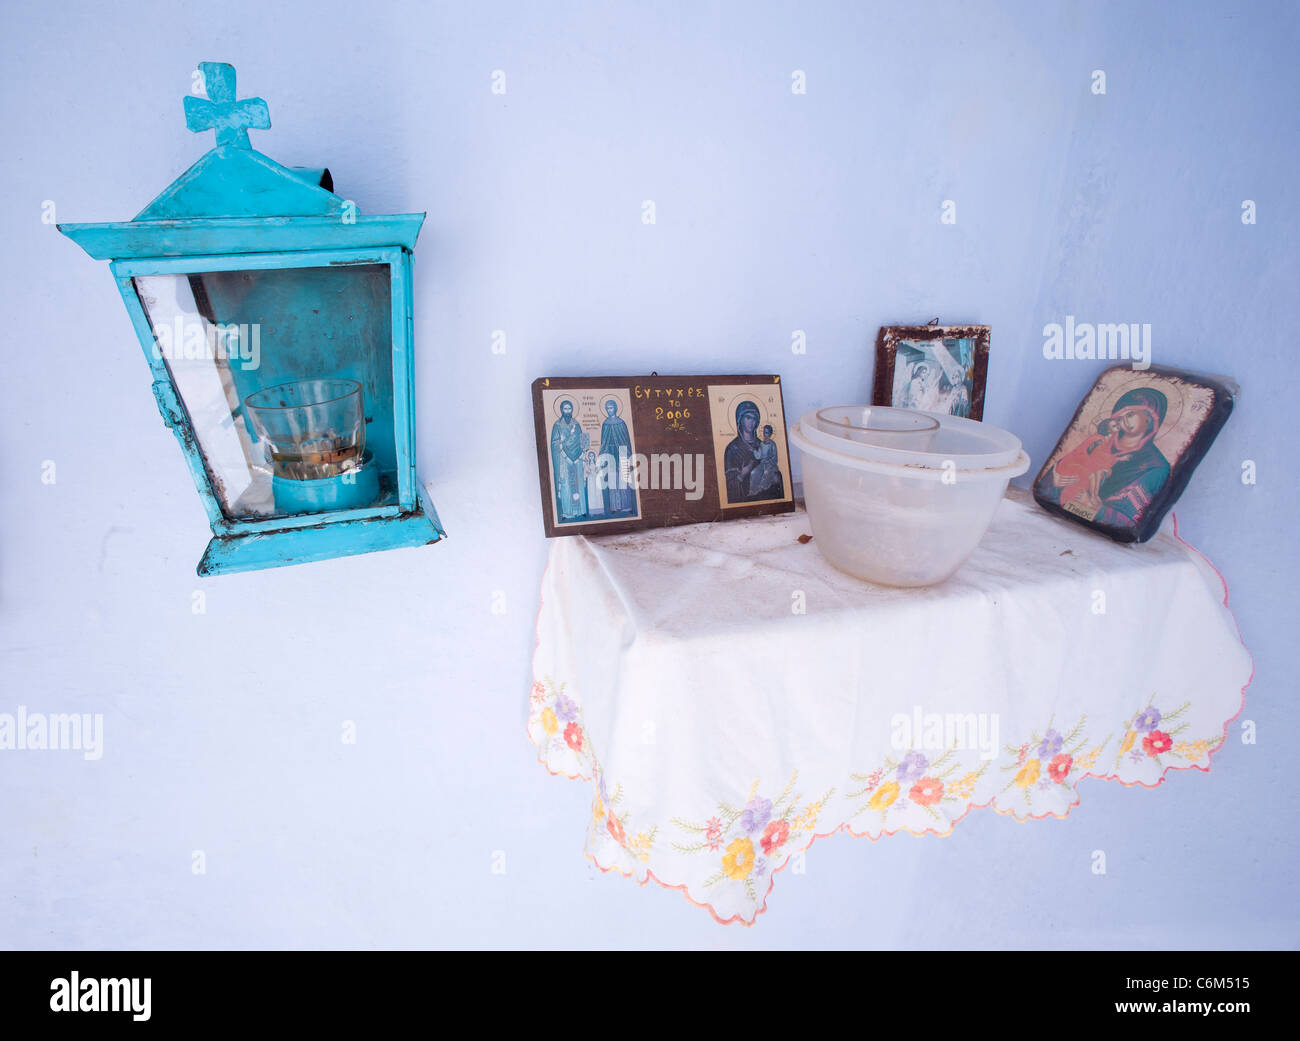 Icone Religiose, offerte votive, Cyclade greca isola di Tinos. Foto Stock